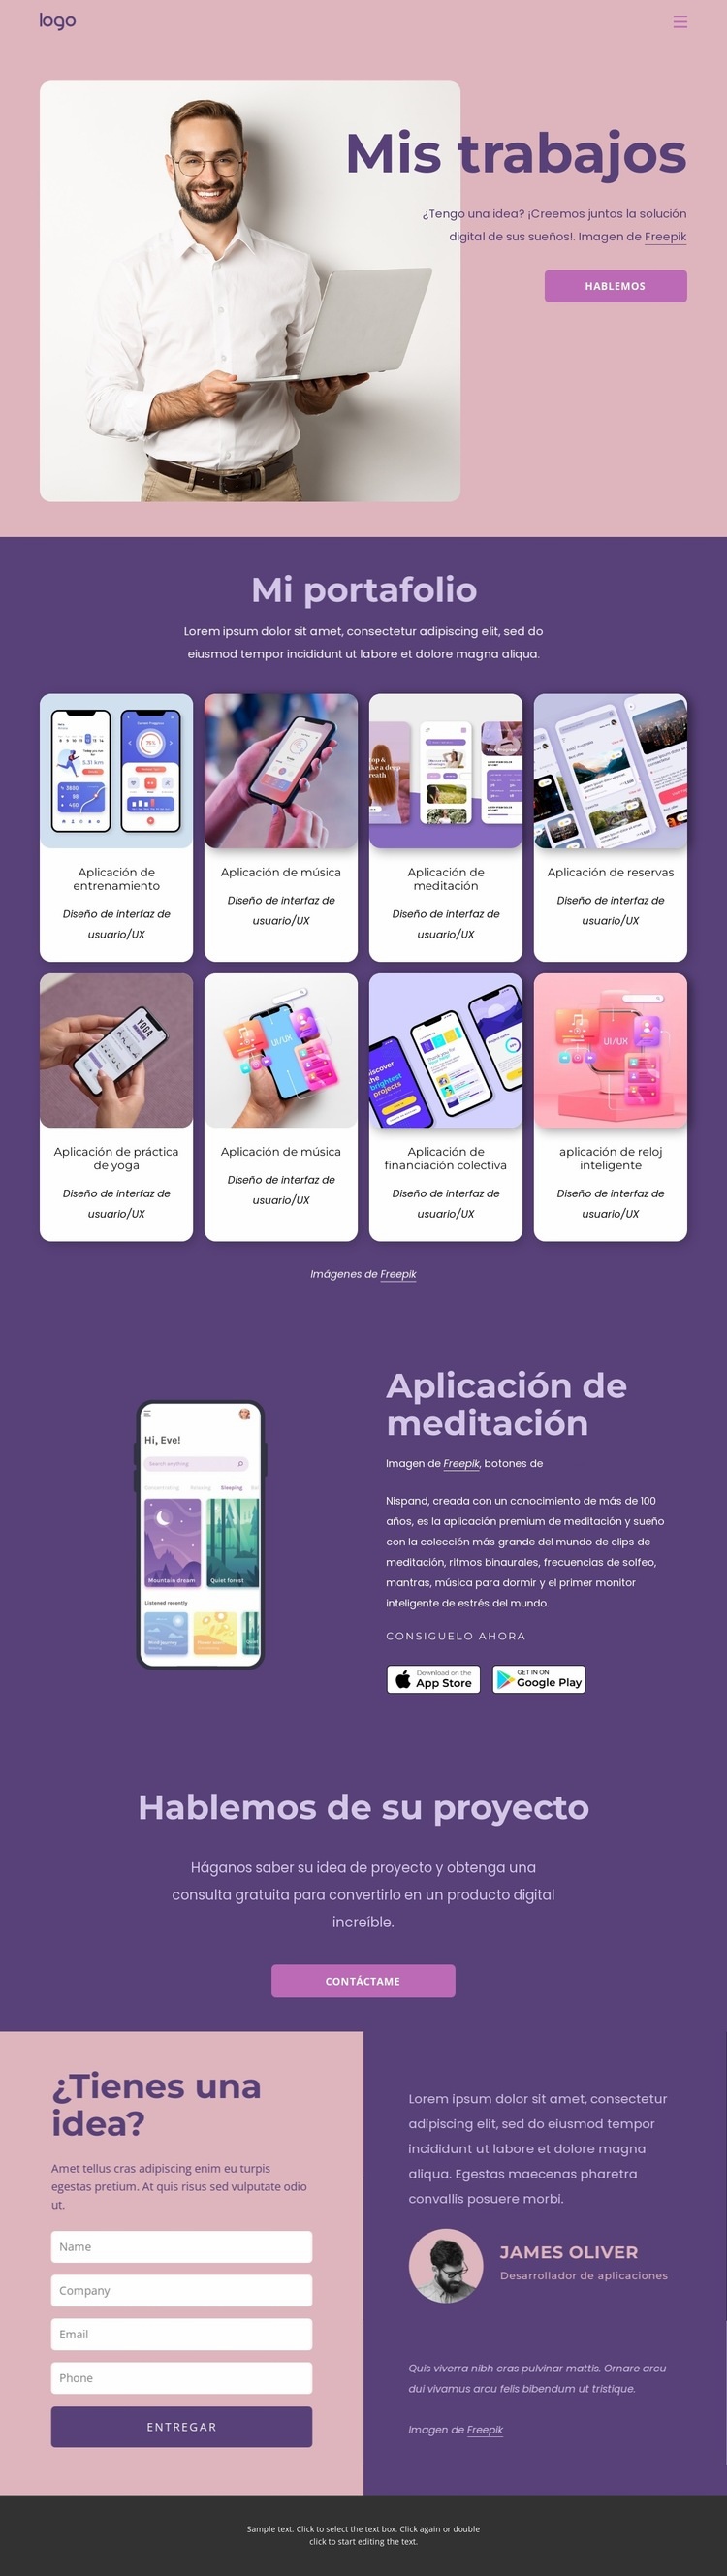 Aplicaciones iOS y Android personalizadas para su negocio Plantilla